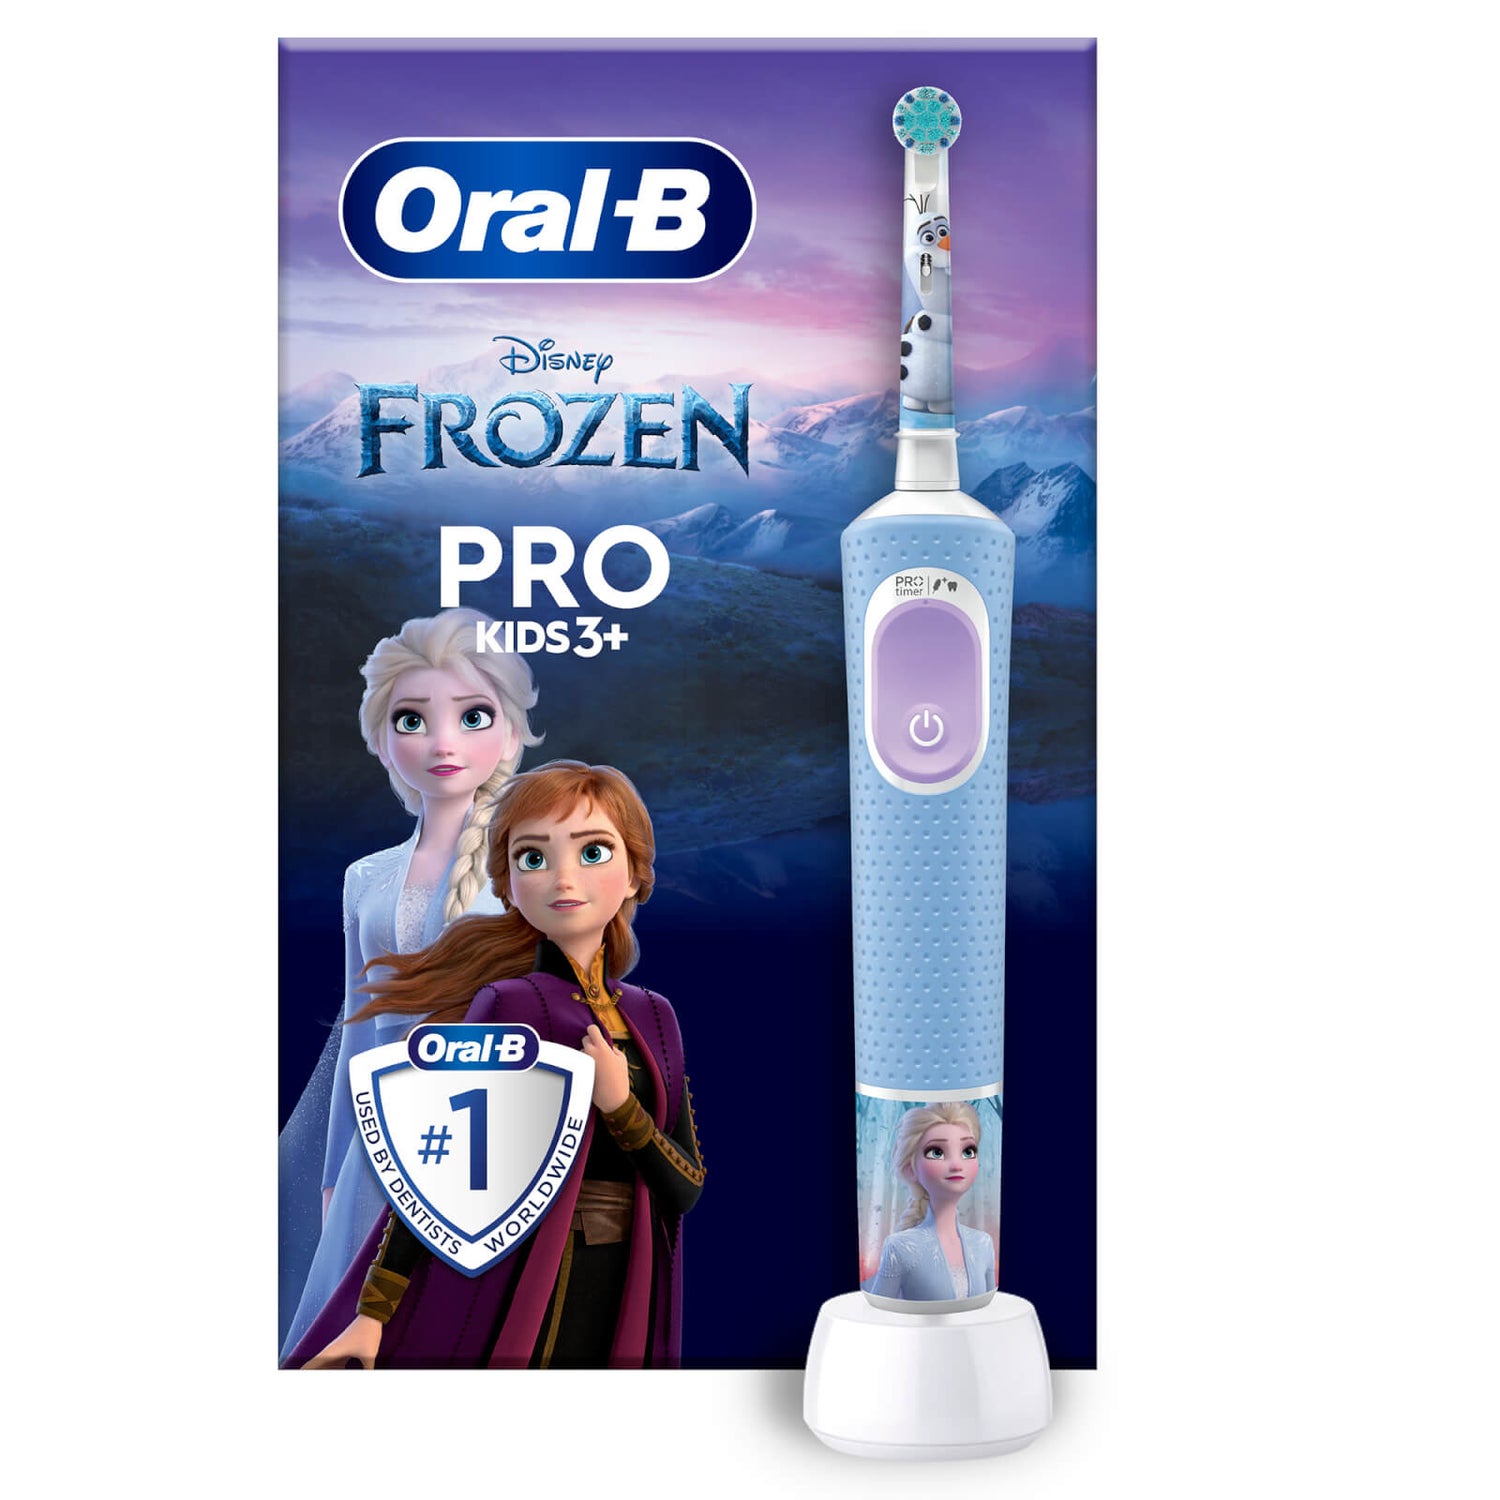 Oral-B Pro Kids Frozen Elektrische Zahnbürste, Blau/Lila